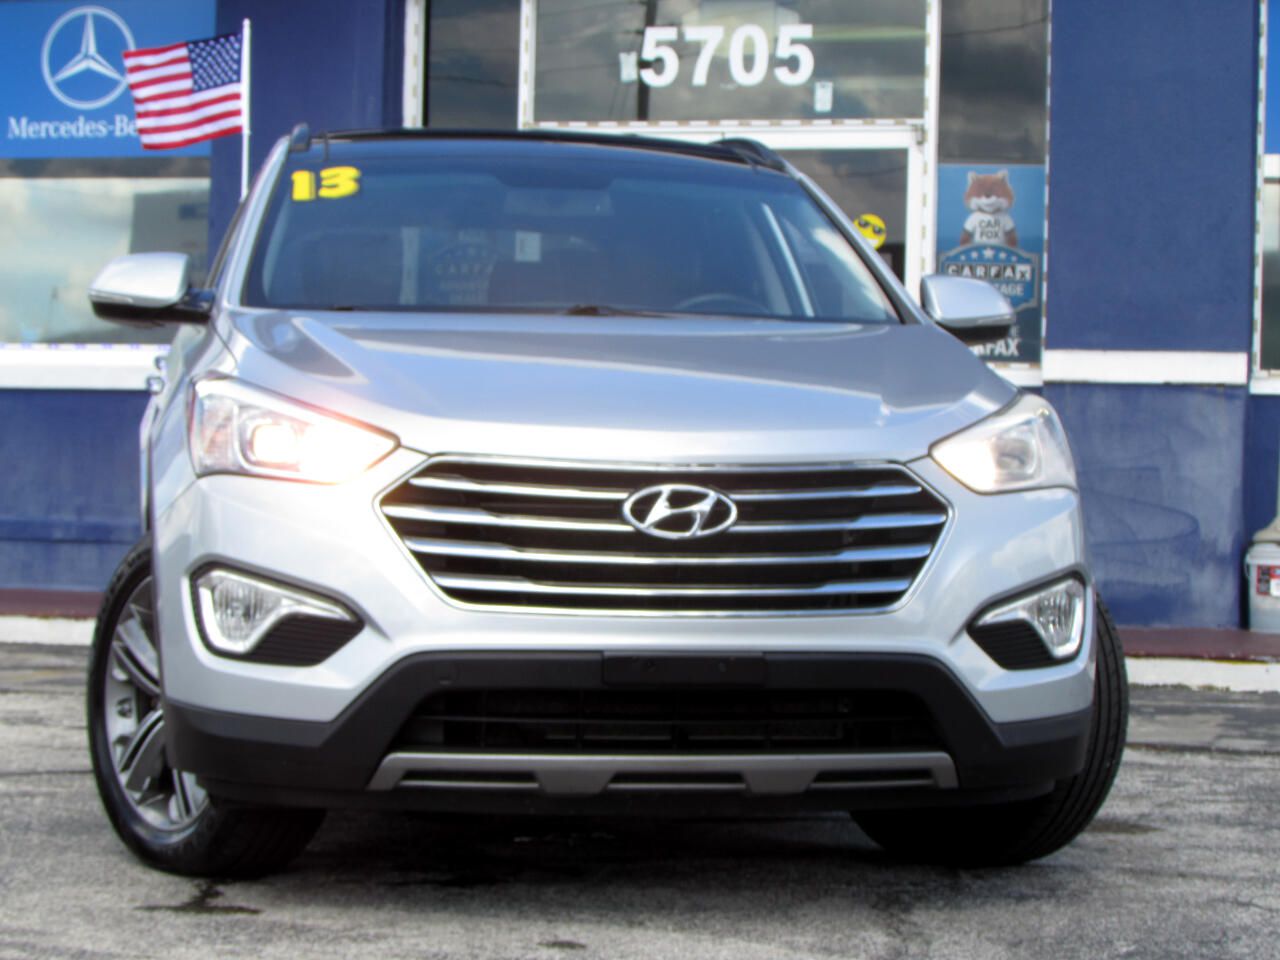 2013 Hyundai Santa Fe